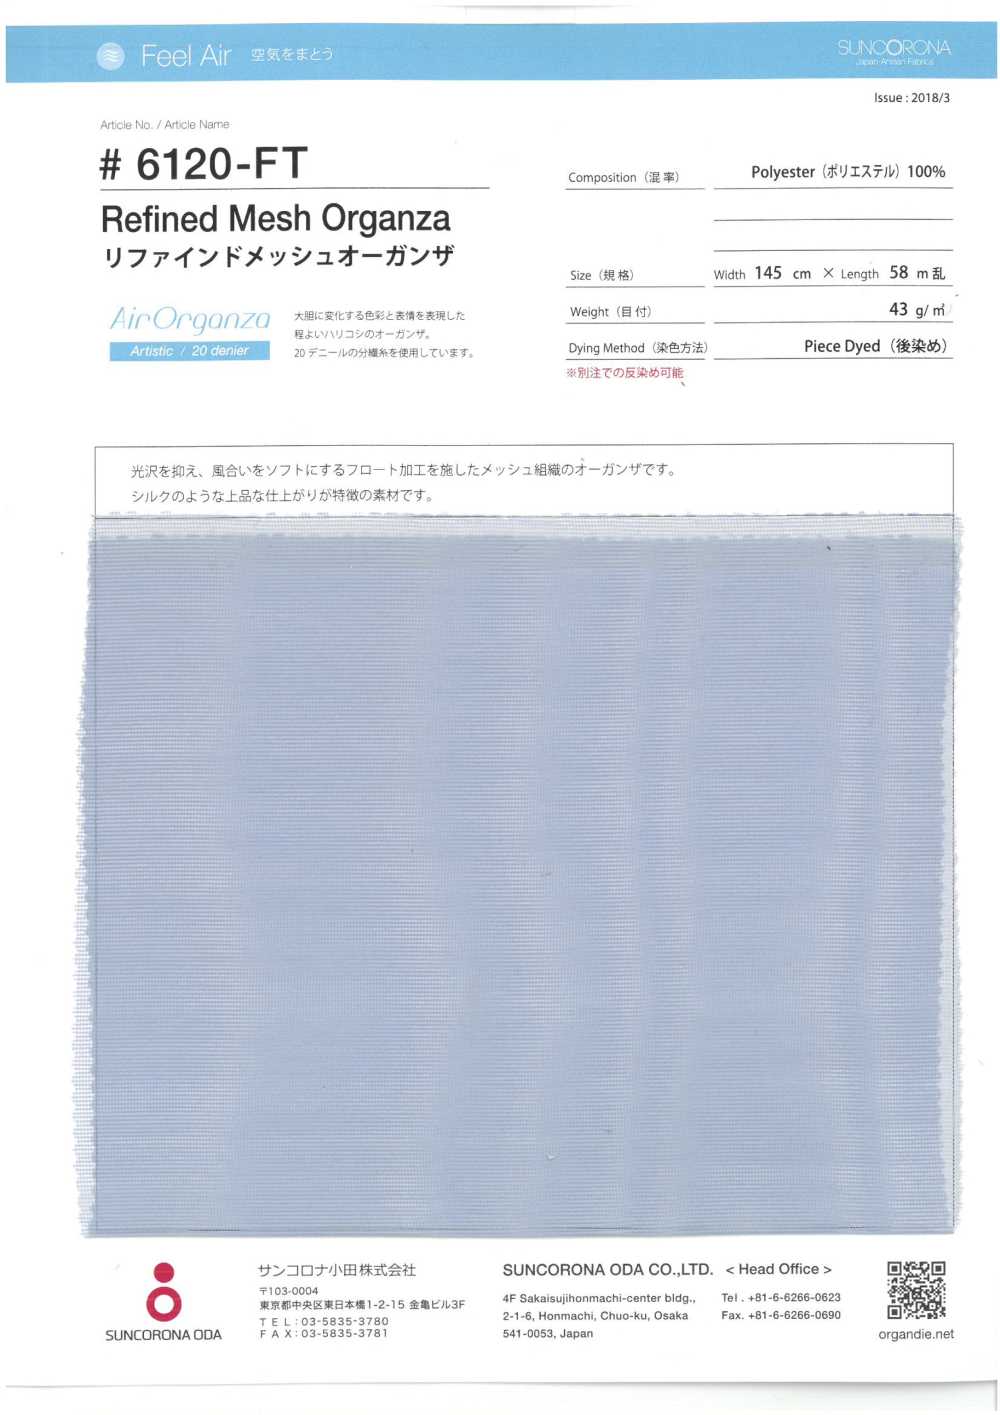 6120-FT Refined Mesh Organza[Textile / Fabric] Suncorona Oda